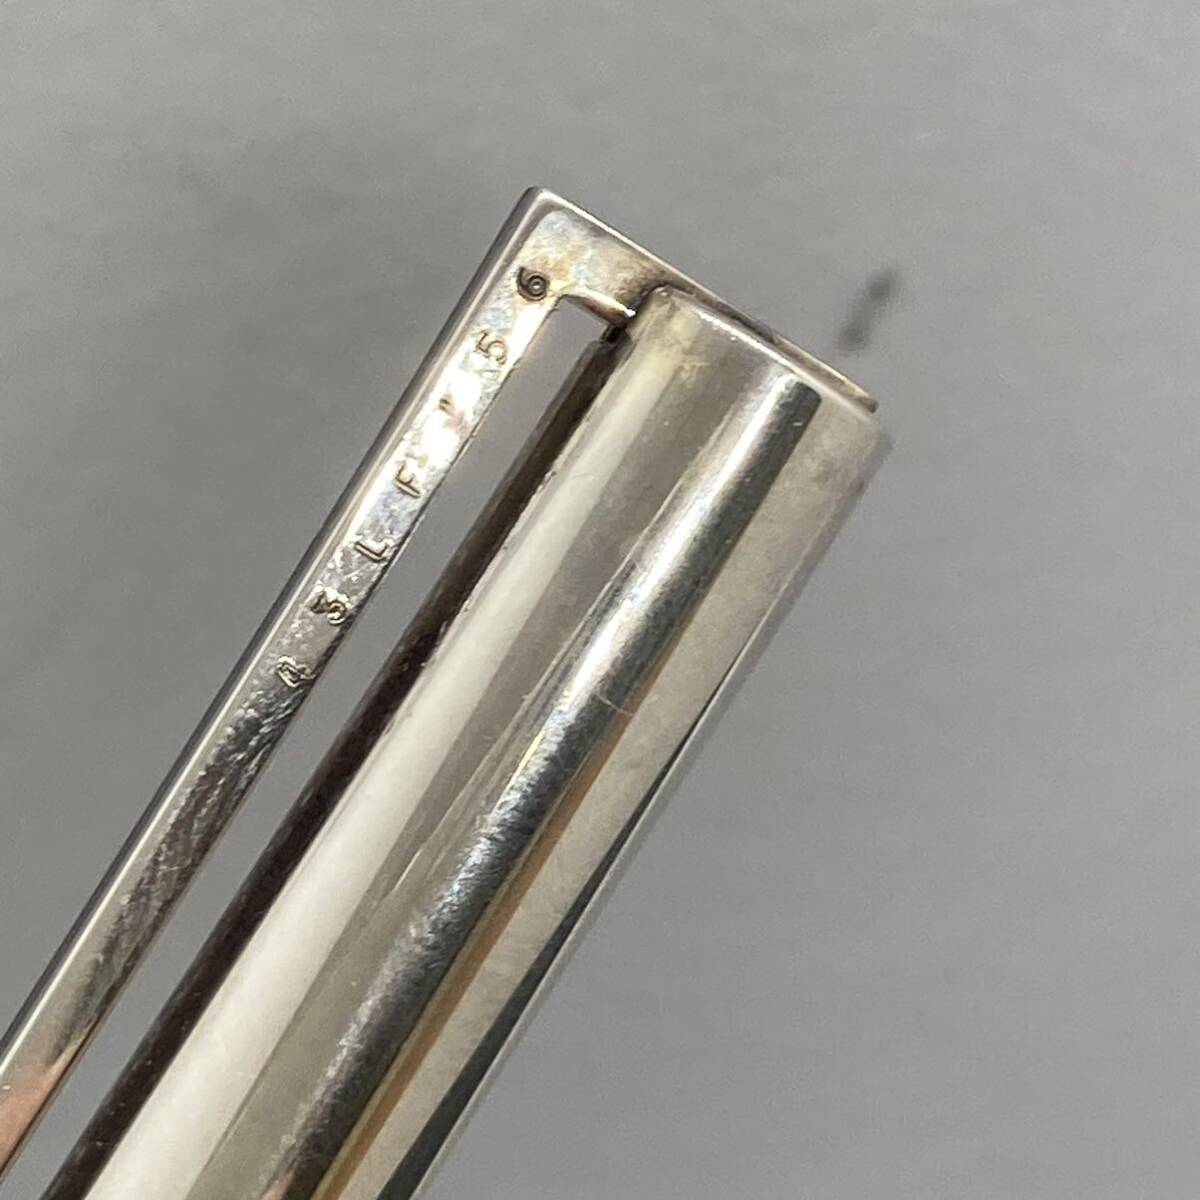 PE2192*S.T.Dupont Dupont кручение тип шариковая ручка серебряный цвет кисть регистрация подтверждено 